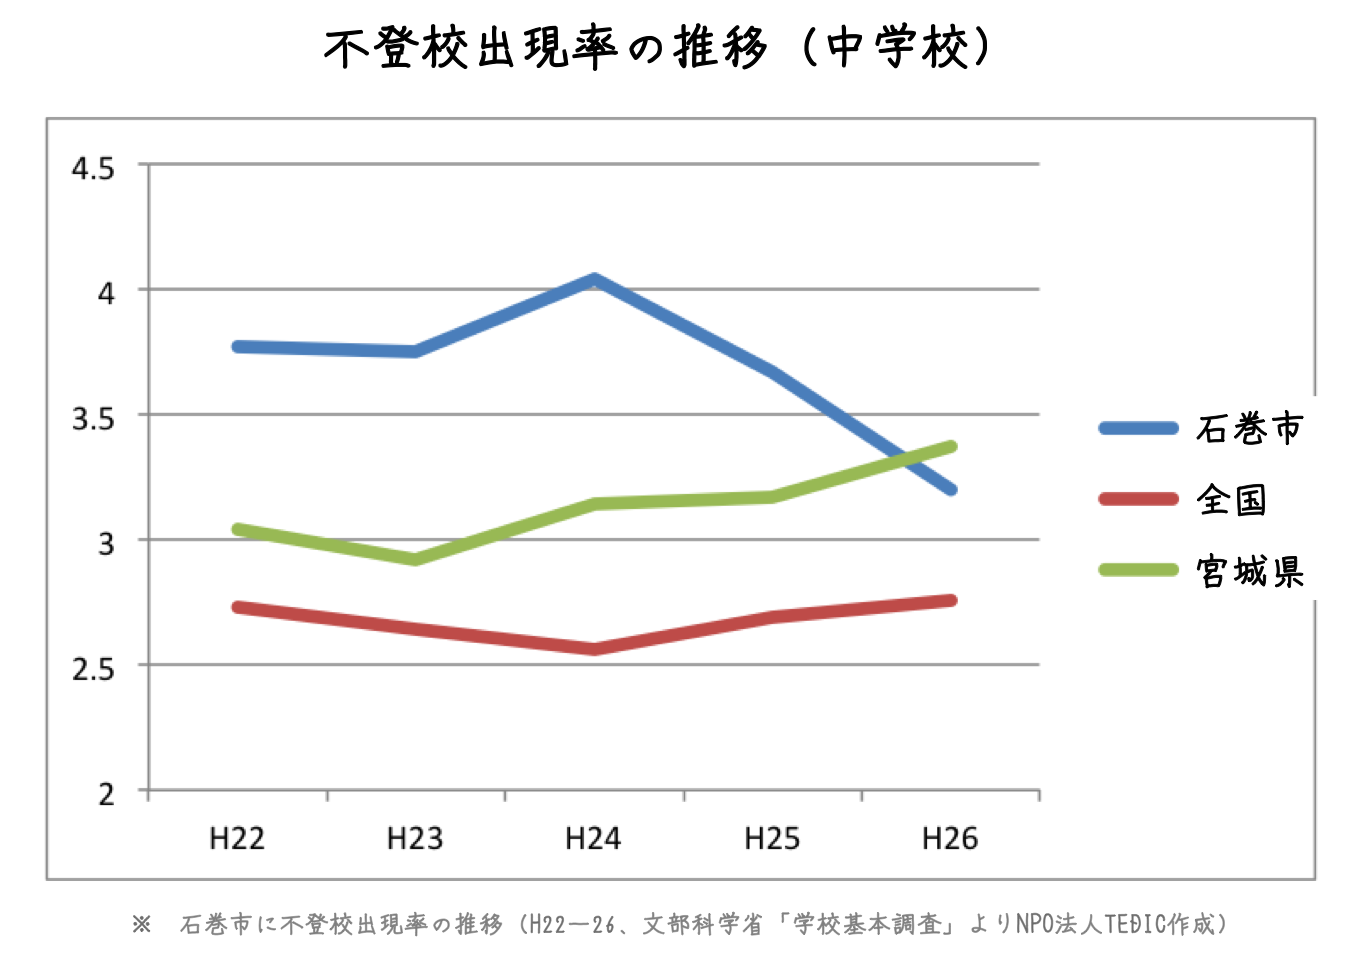 文部科学省「学校基本調査」による2010年～2014年の石巻市における不登校出現率を小学校・中学校のそれぞれでグラフ化